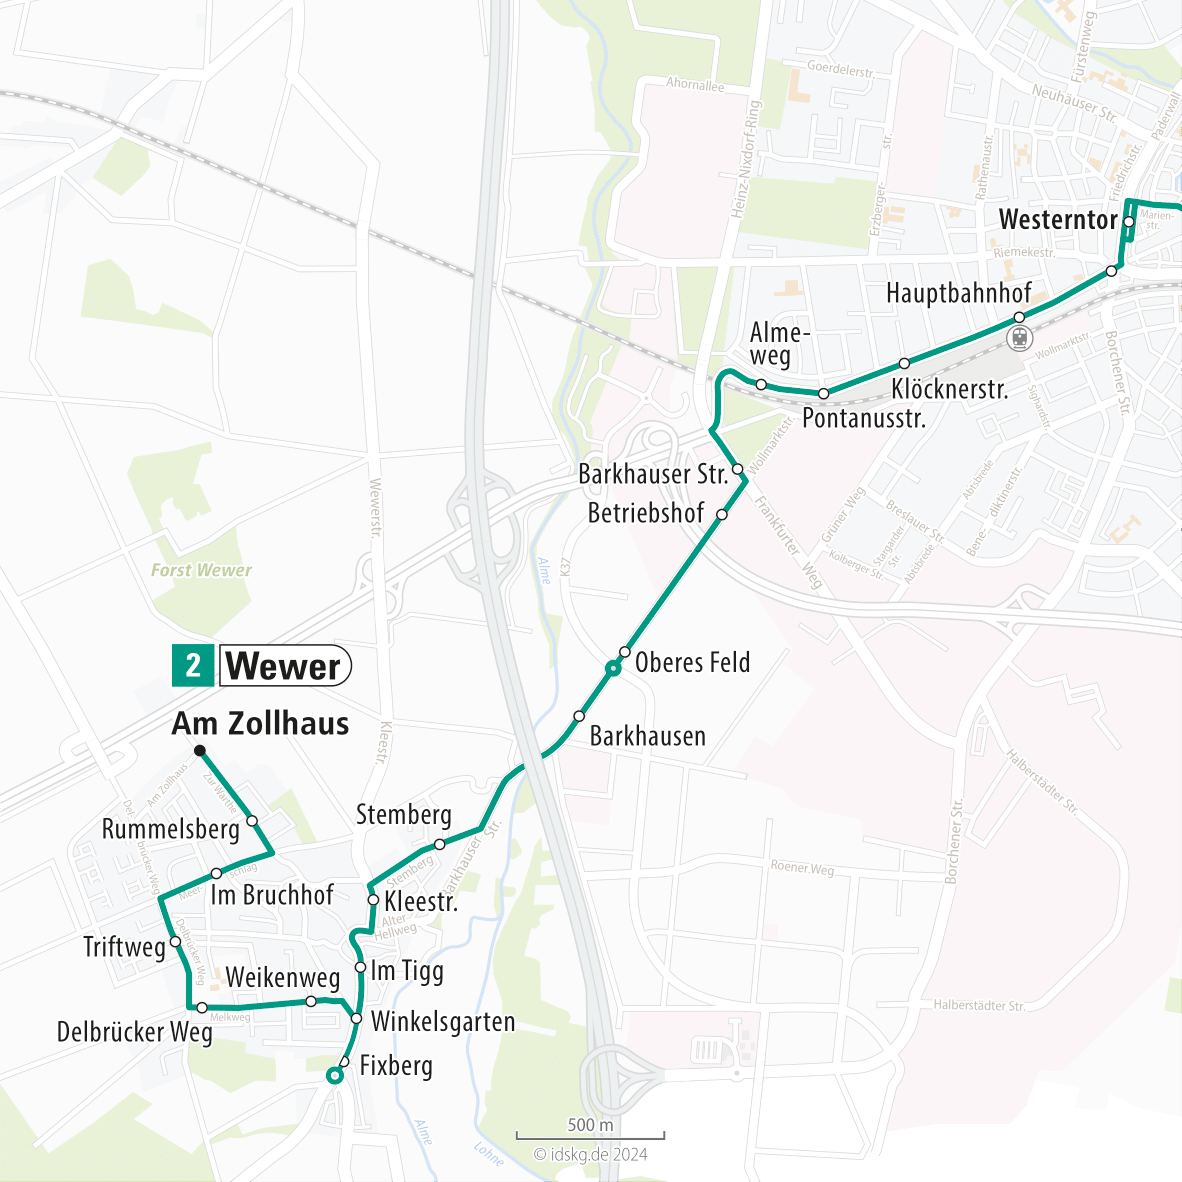 Kartenausschnitt der Linie 2 Wewer bis Westerntor 15x15